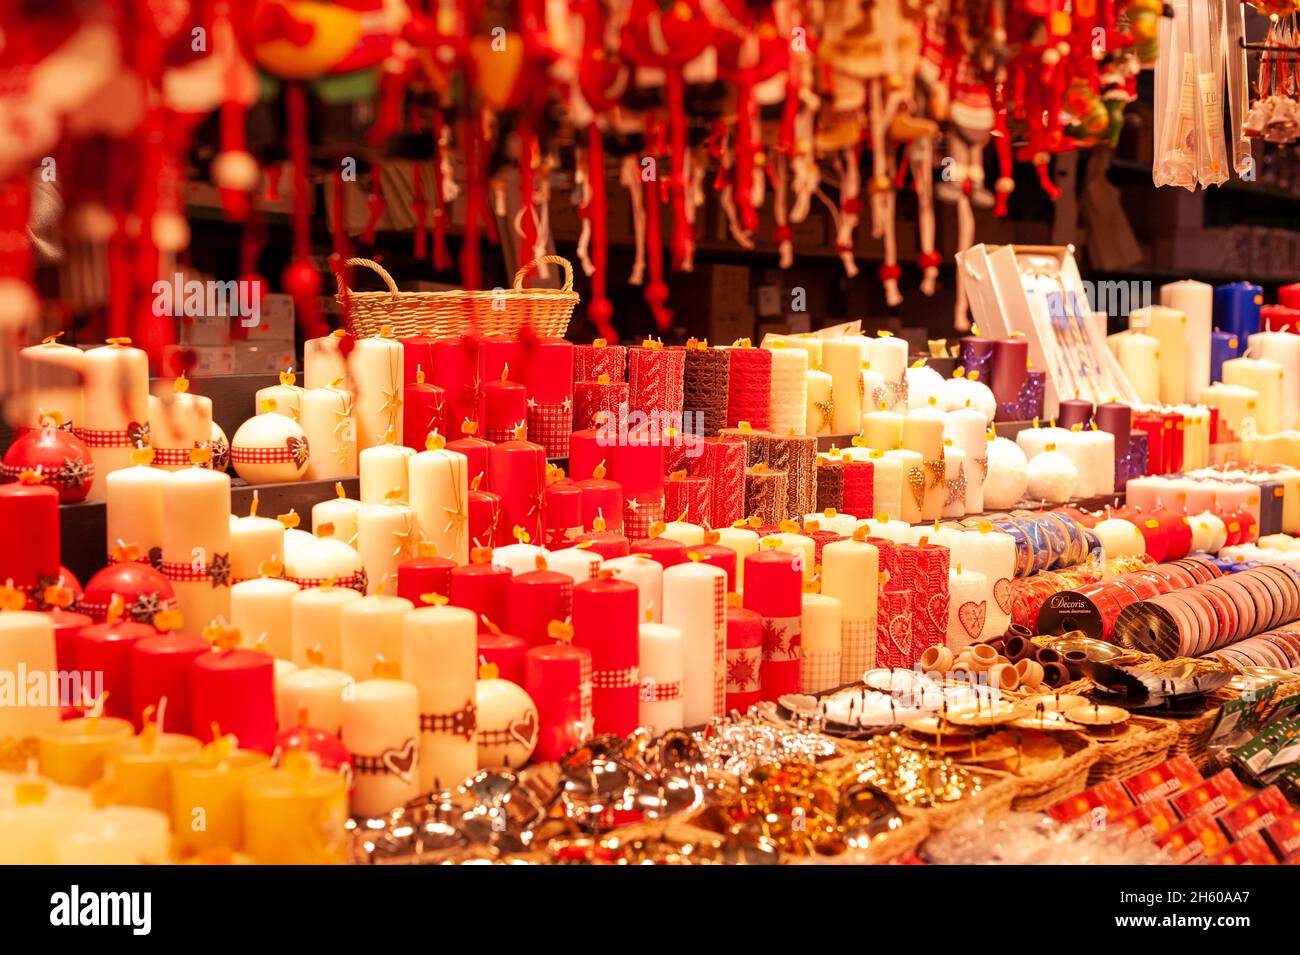 Stands de vente du marché de Noël de Strasbourg, France.Un stand vendant des articles de fête très colorés. Banque D'Images